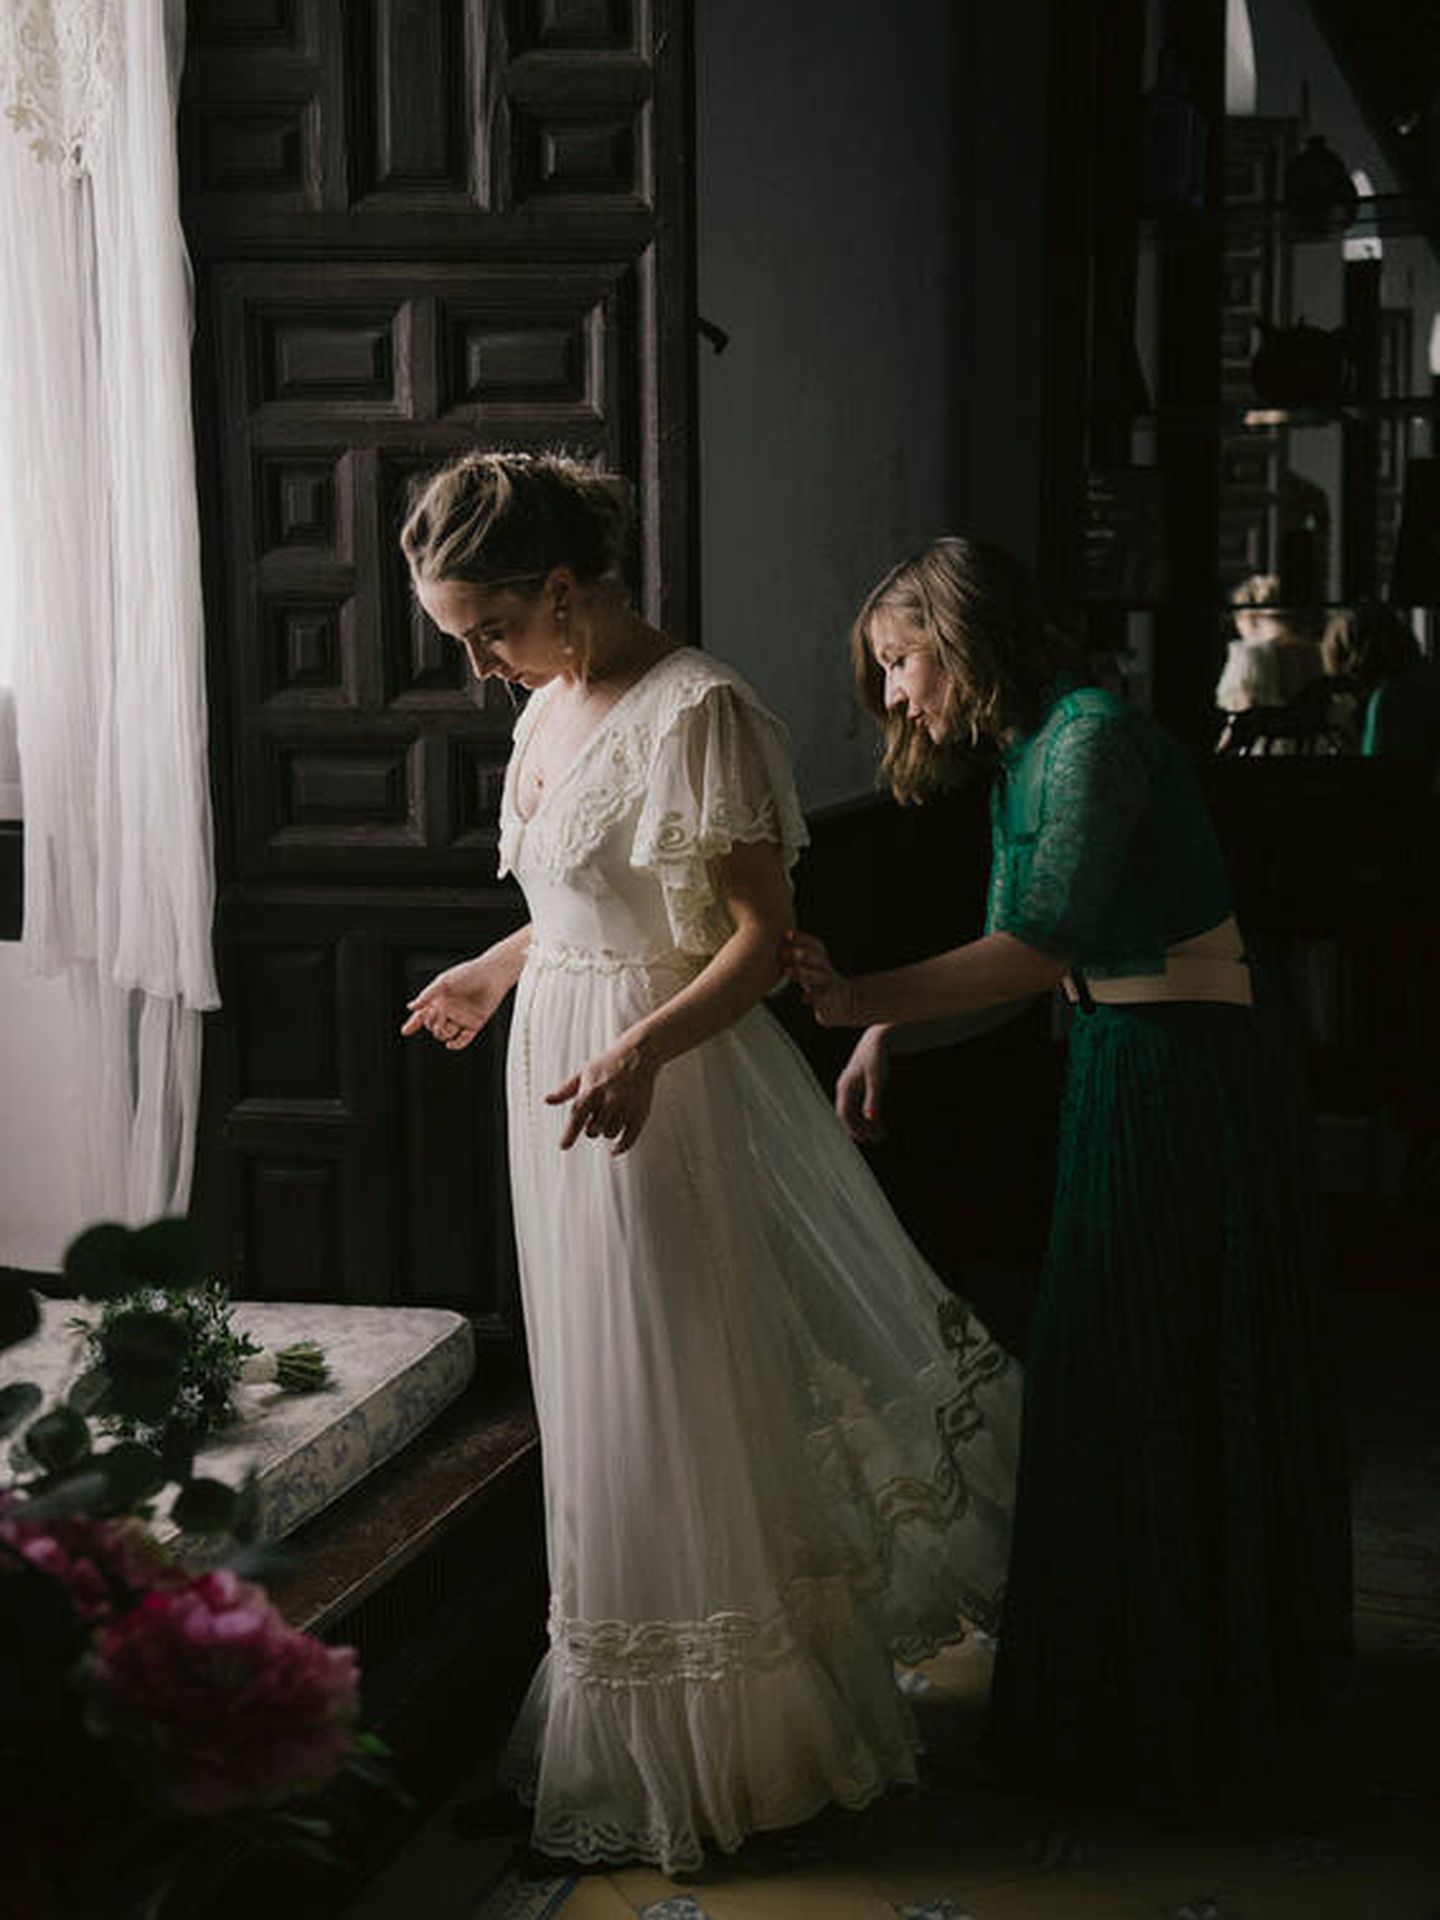 Paula Matthei, la diseñadora de vestidos de novia, el día de su boda. (Días de vino y rosas)